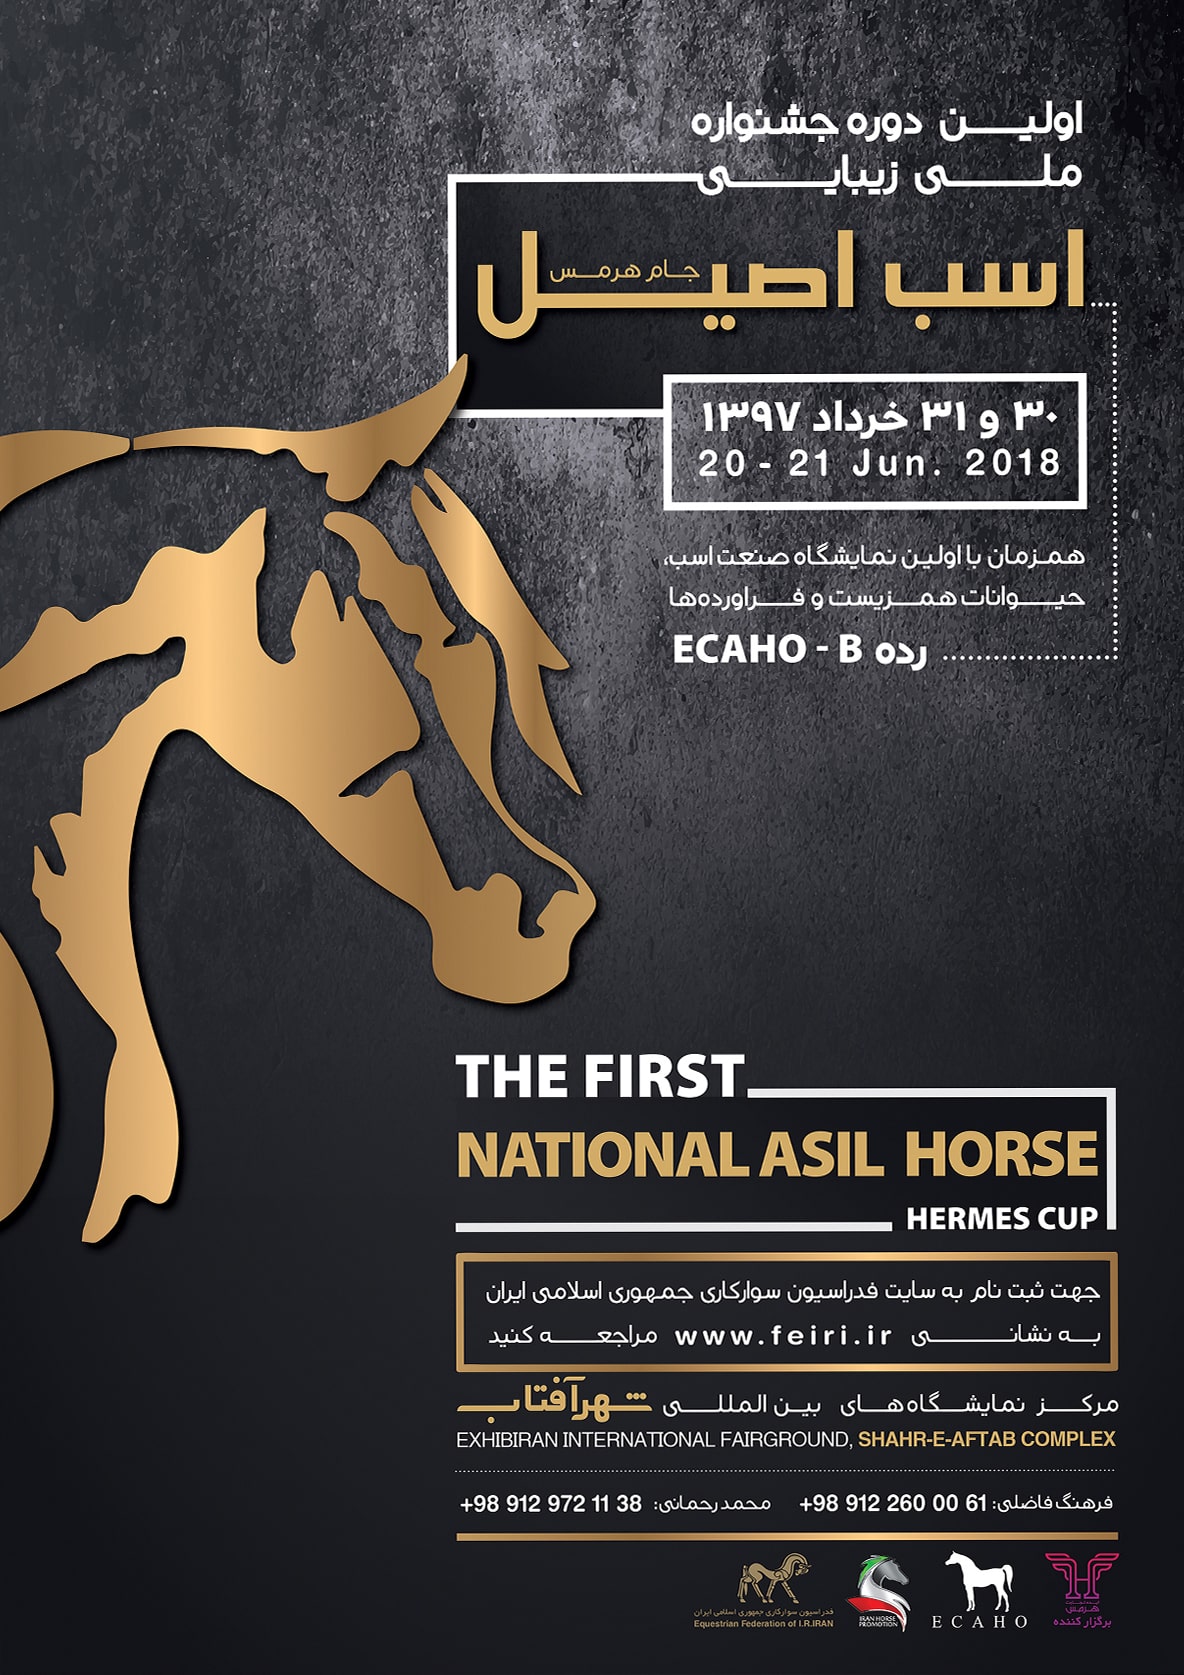 پسوتر جشنواره ملی زیبایی اسب اصیل